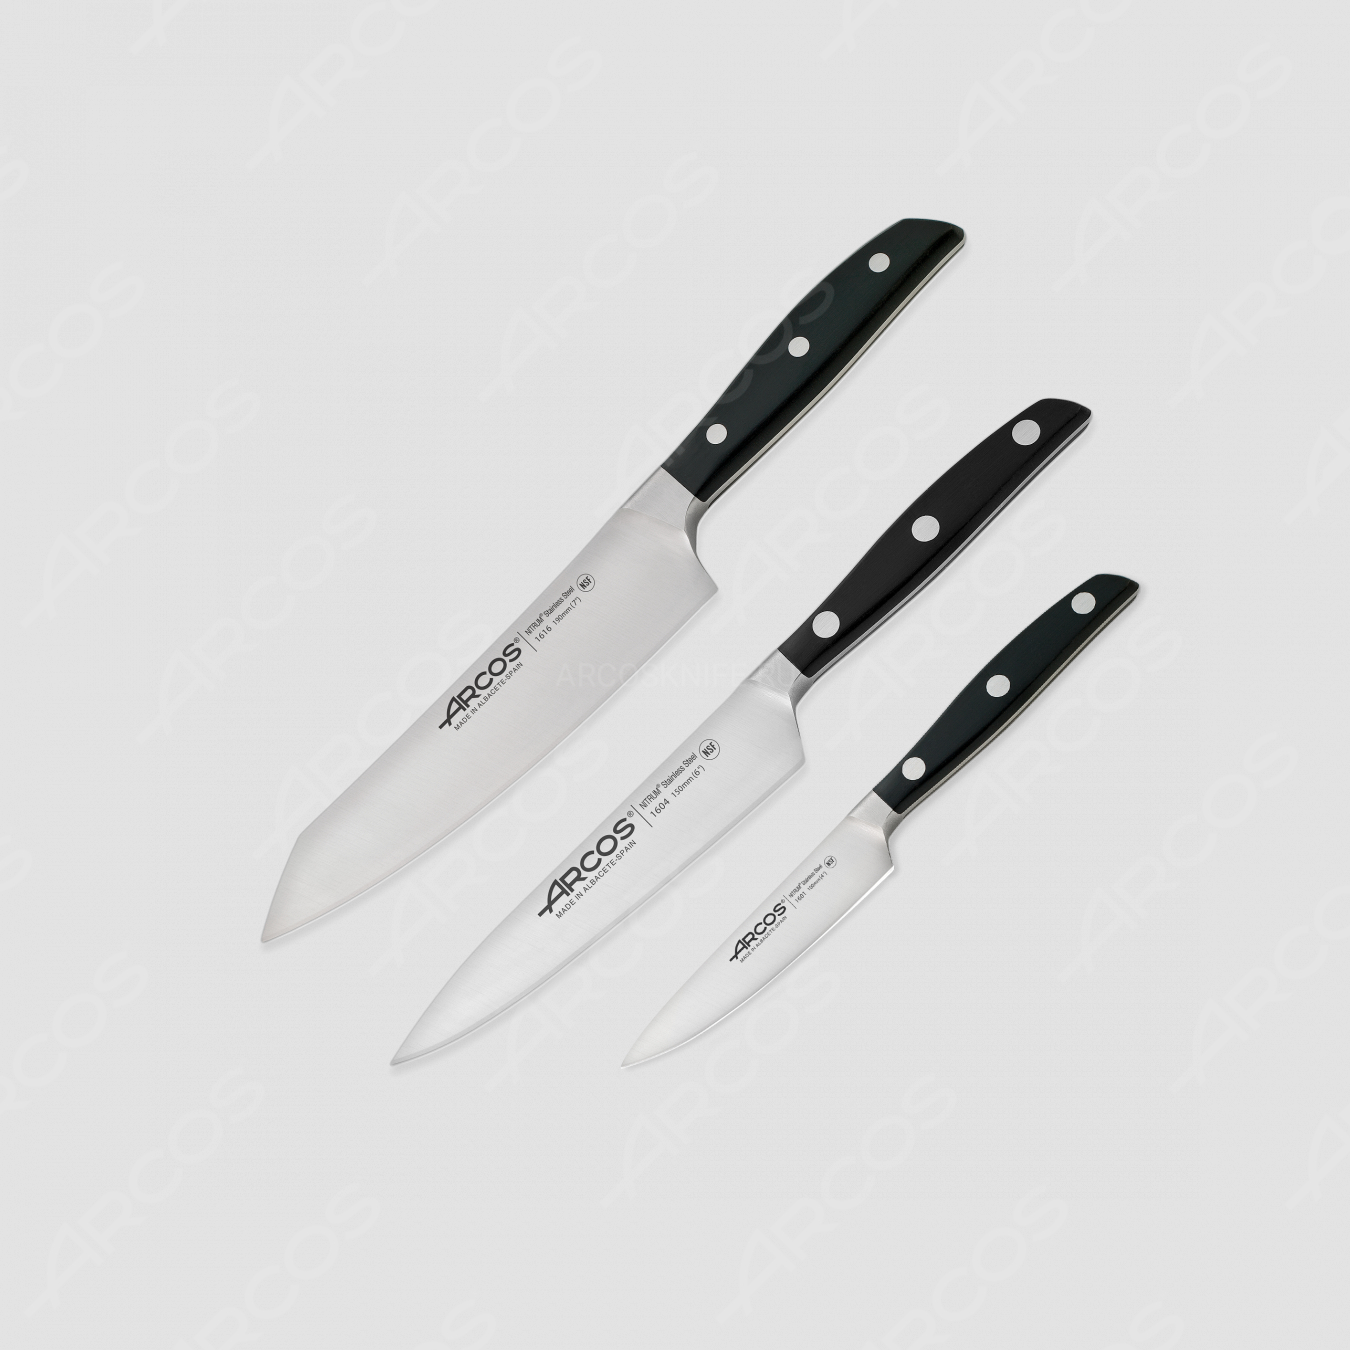 Набор кухонных ножей 3 шт, (10 см, 15 см, 19 см,) цвет ручек - черный, серия Manhattan, ARCOS, Испания